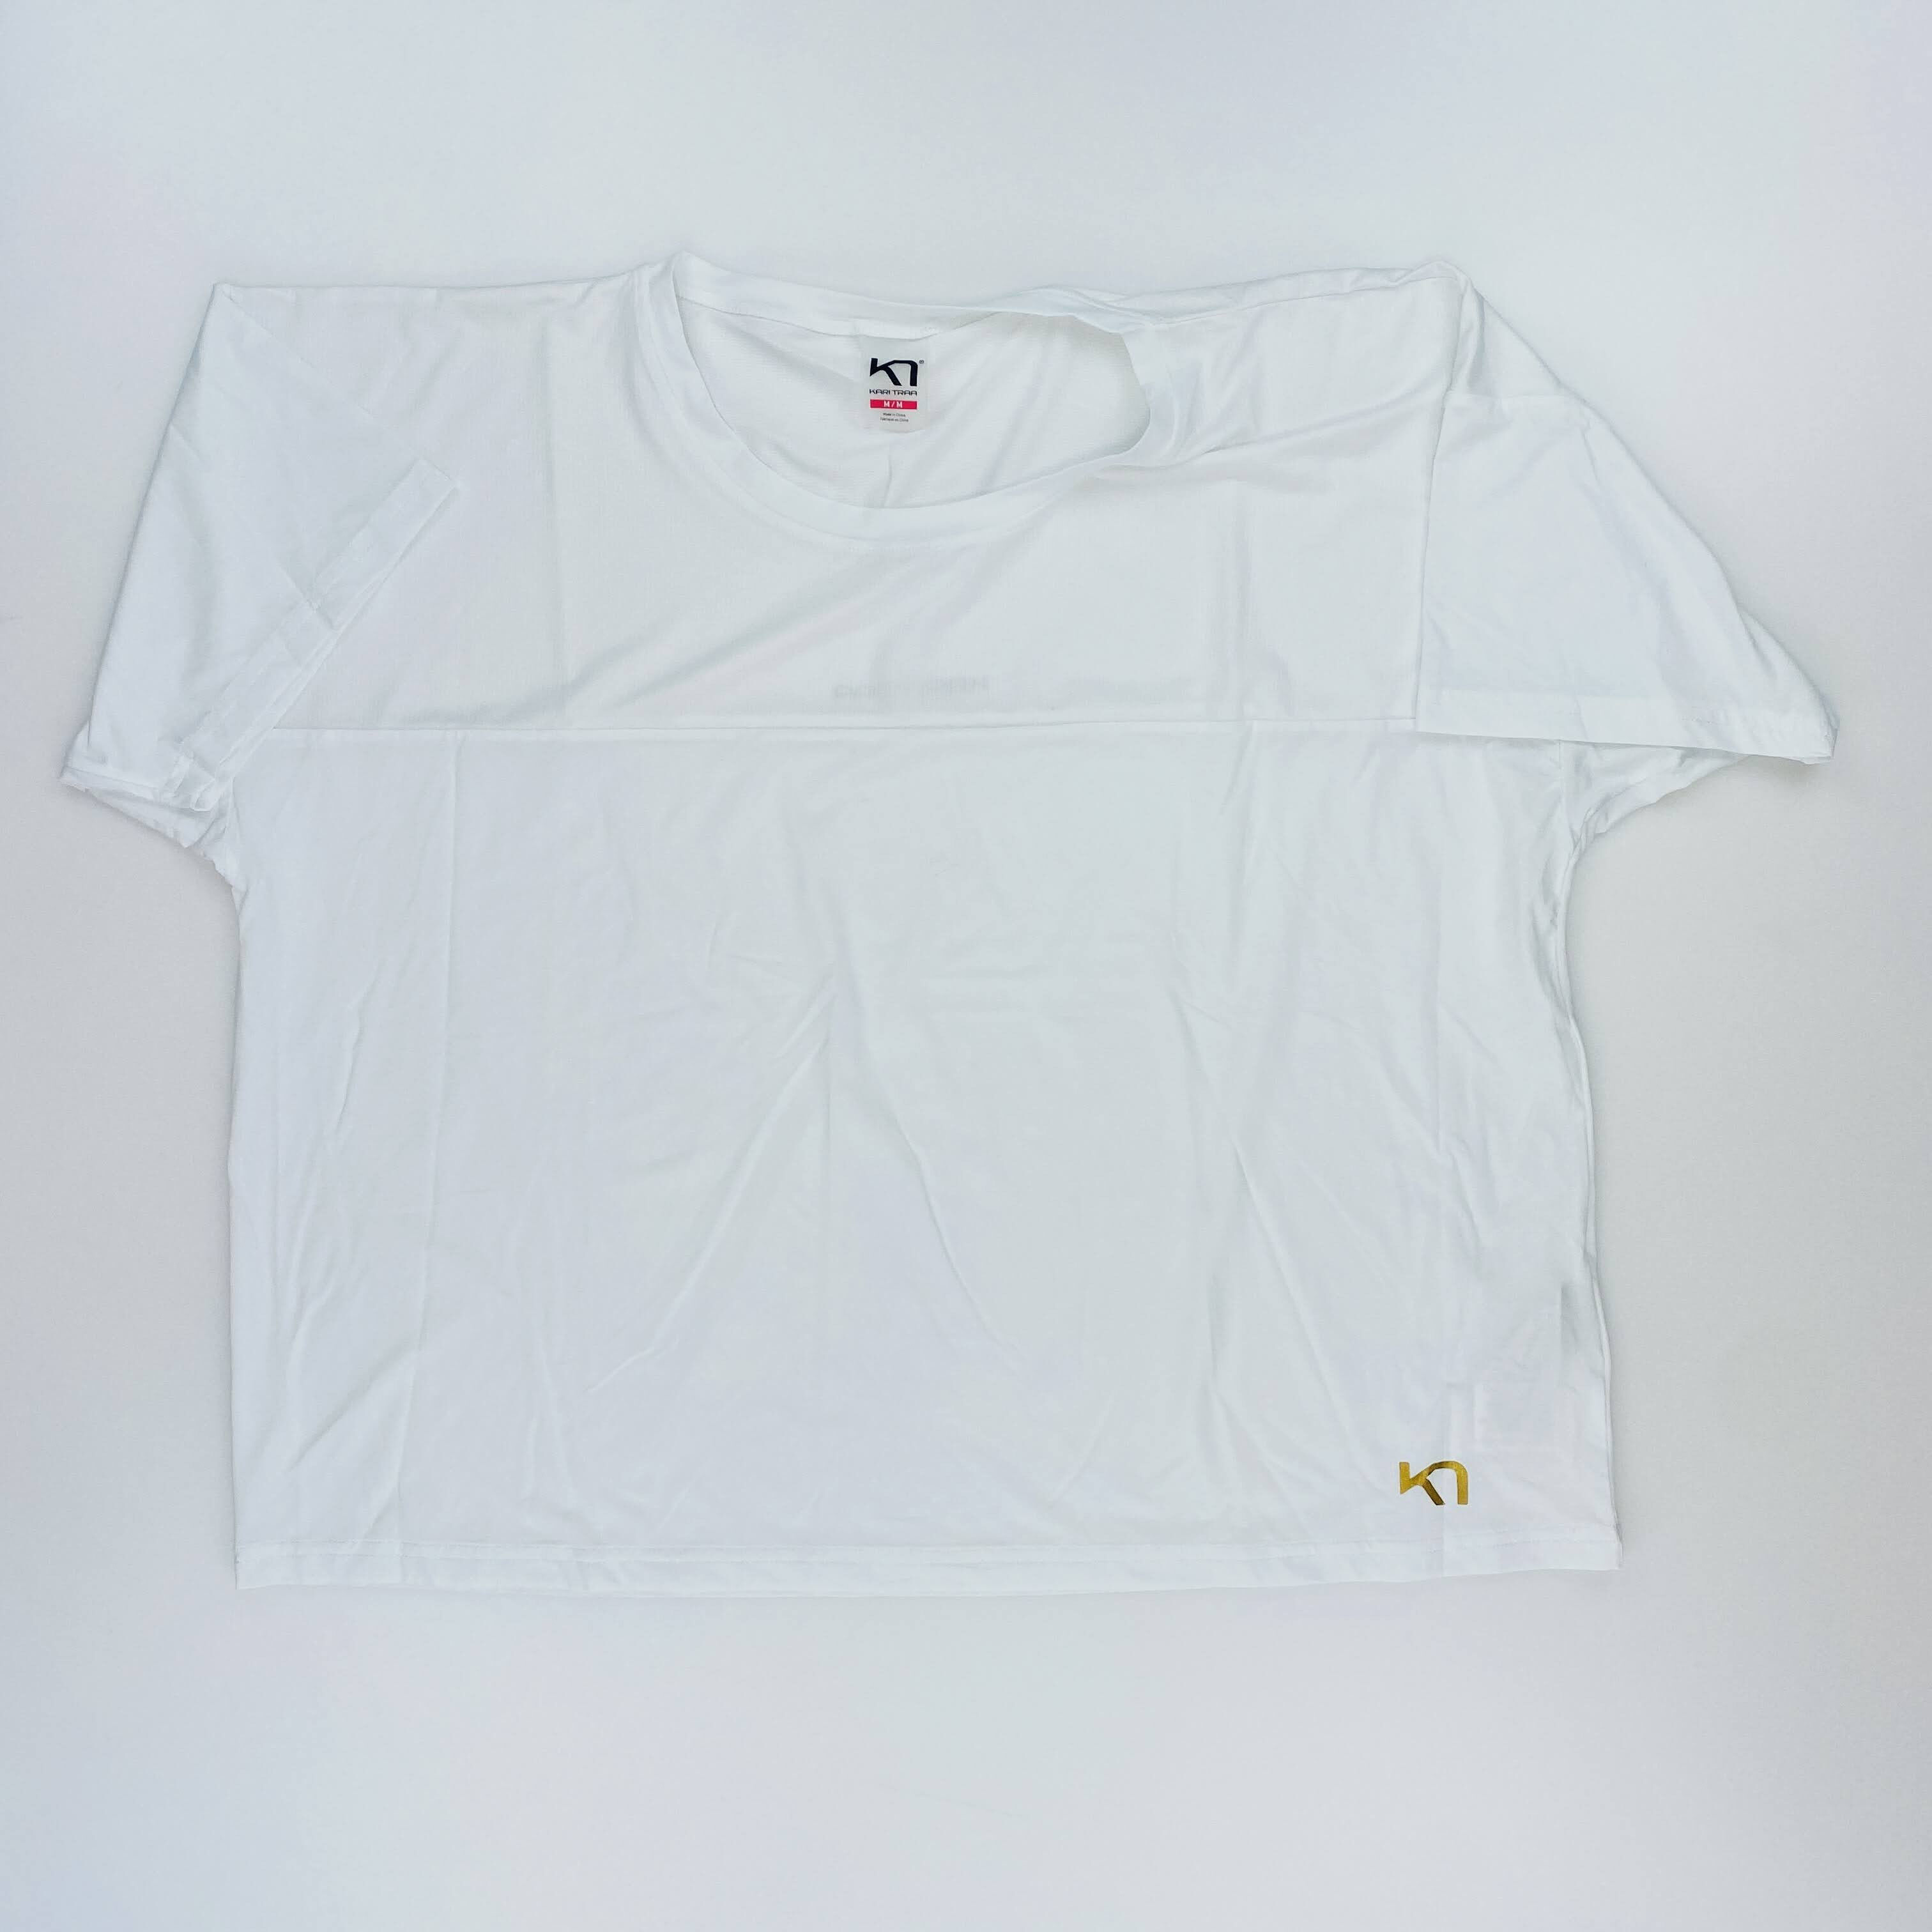 Kari Traa Beatrice Tee - Second Hand T-shirt - Women's - White - M | Hardloop